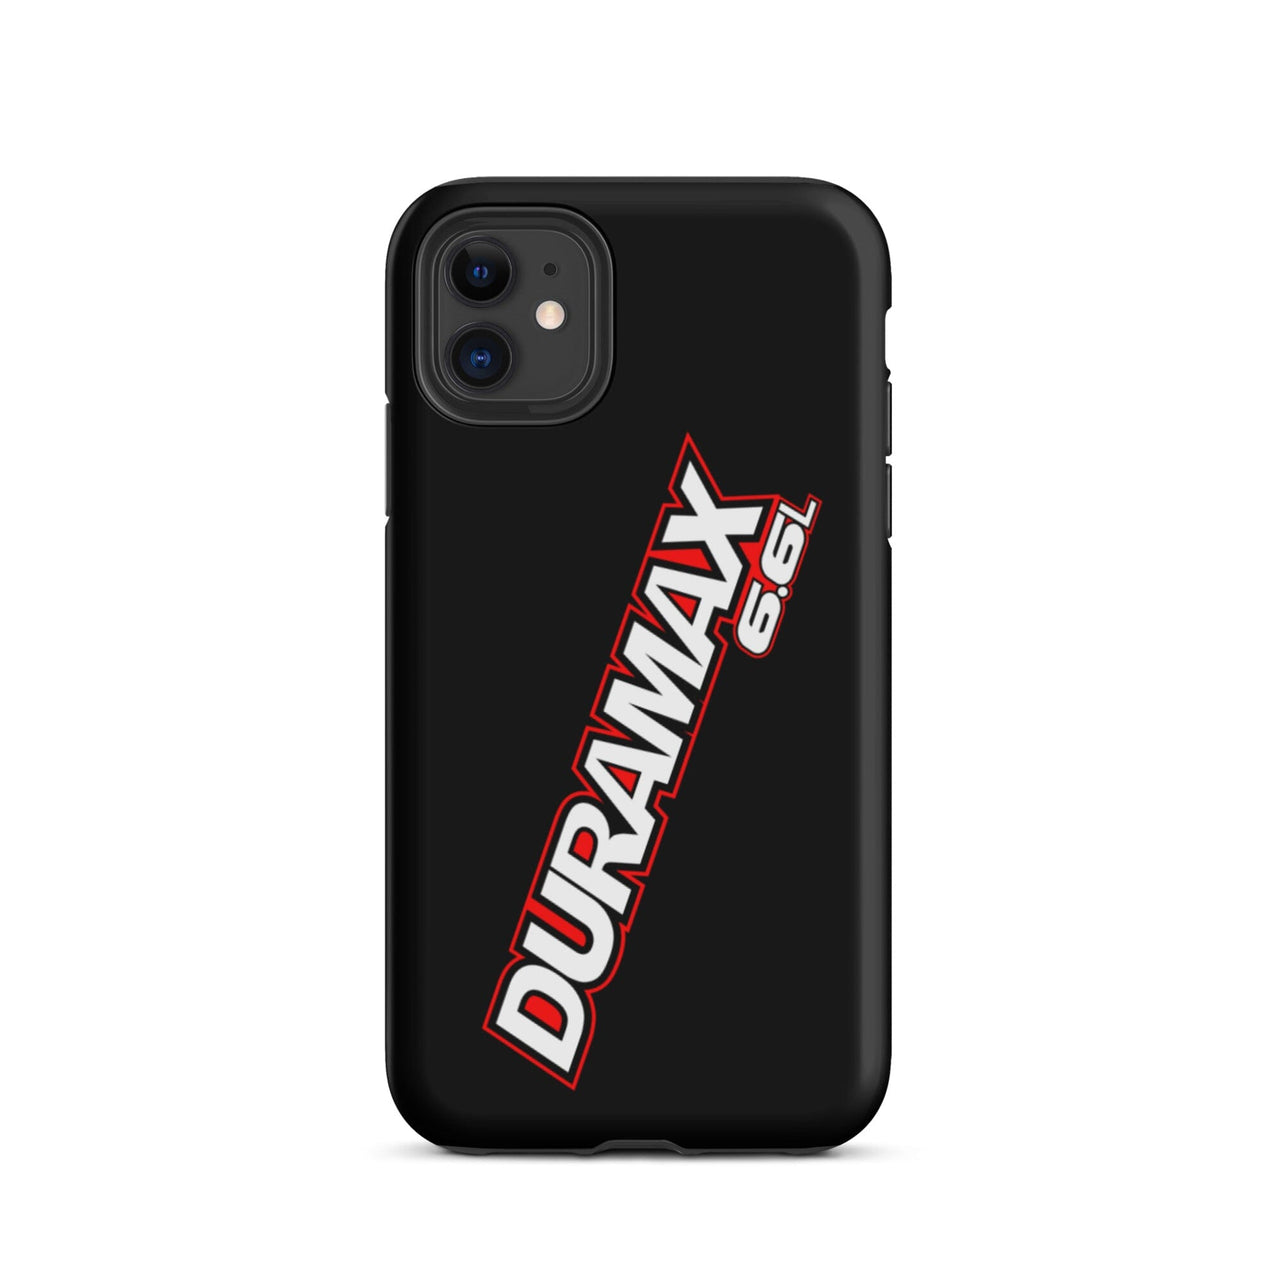 Duramax Phone Case Tough iPhone case